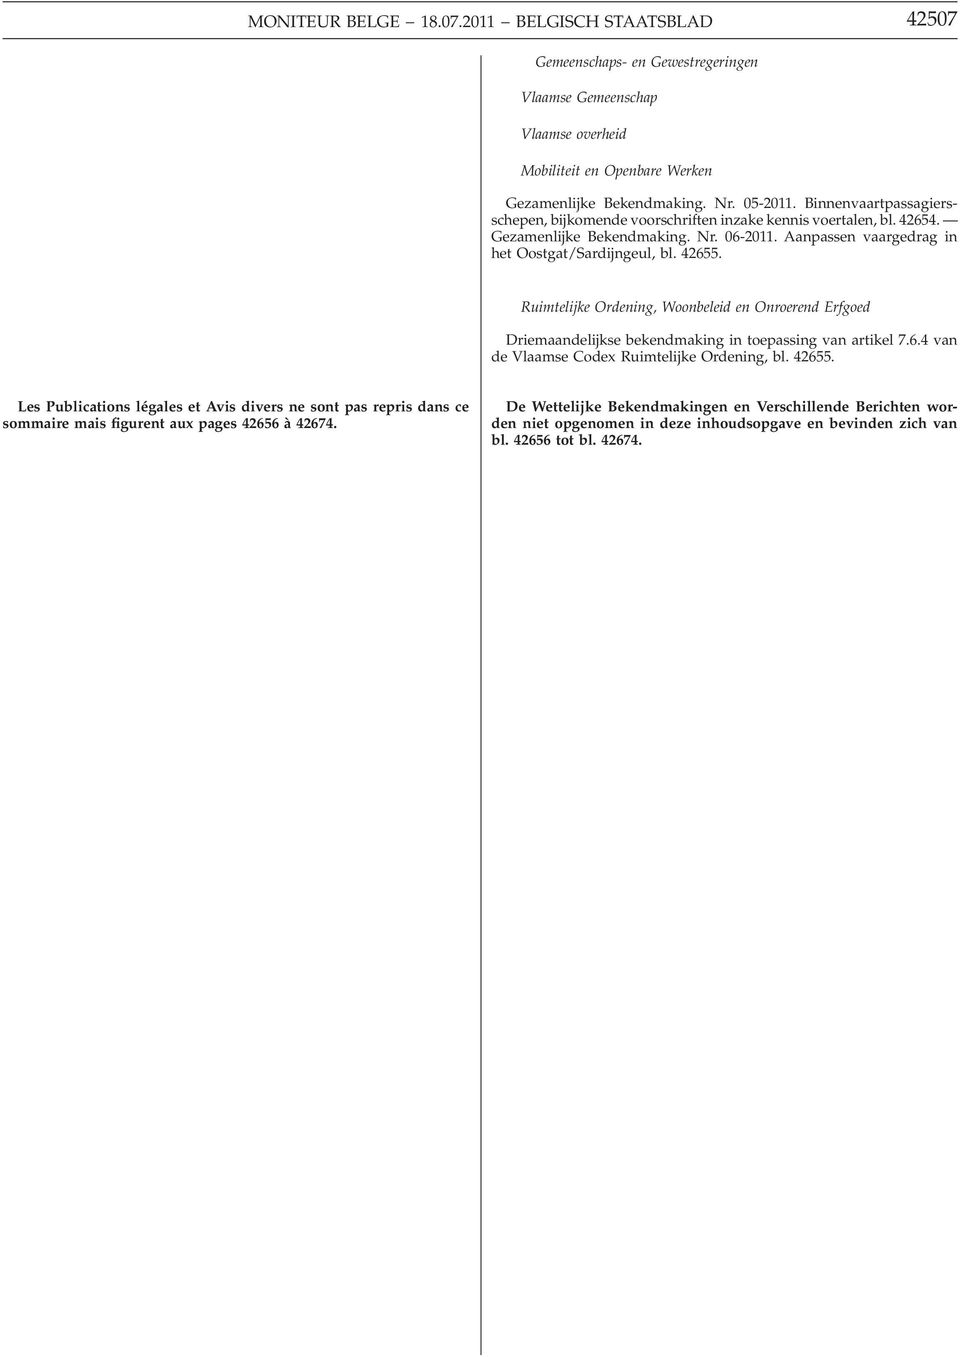 Ruimtelijke Ordening, Woonbeleid en Onroerend Erfgoed Driemaandelijkse bekendmaking in toepassing van artikel 7.6.4 van de Vlaamse Codex Ruimtelijke Ordening, bl. 42655.